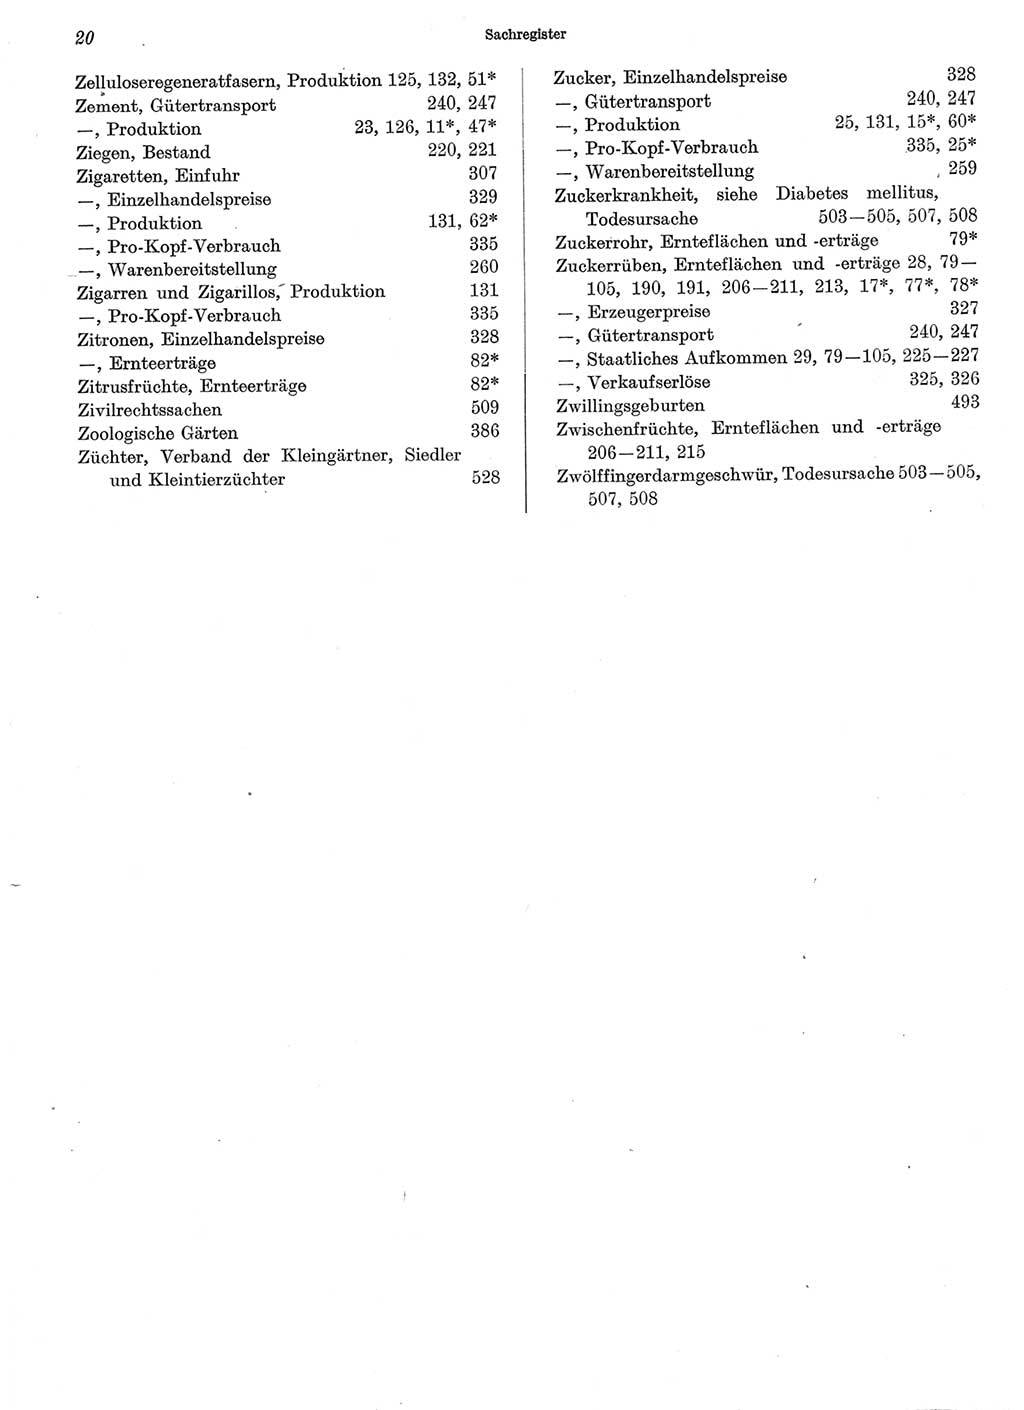 Statistisches Jahrbuch der Deutschen Demokratischen Republik (DDR) 1973, Seite 20 (Stat. Jb. DDR 1973, S. 20)